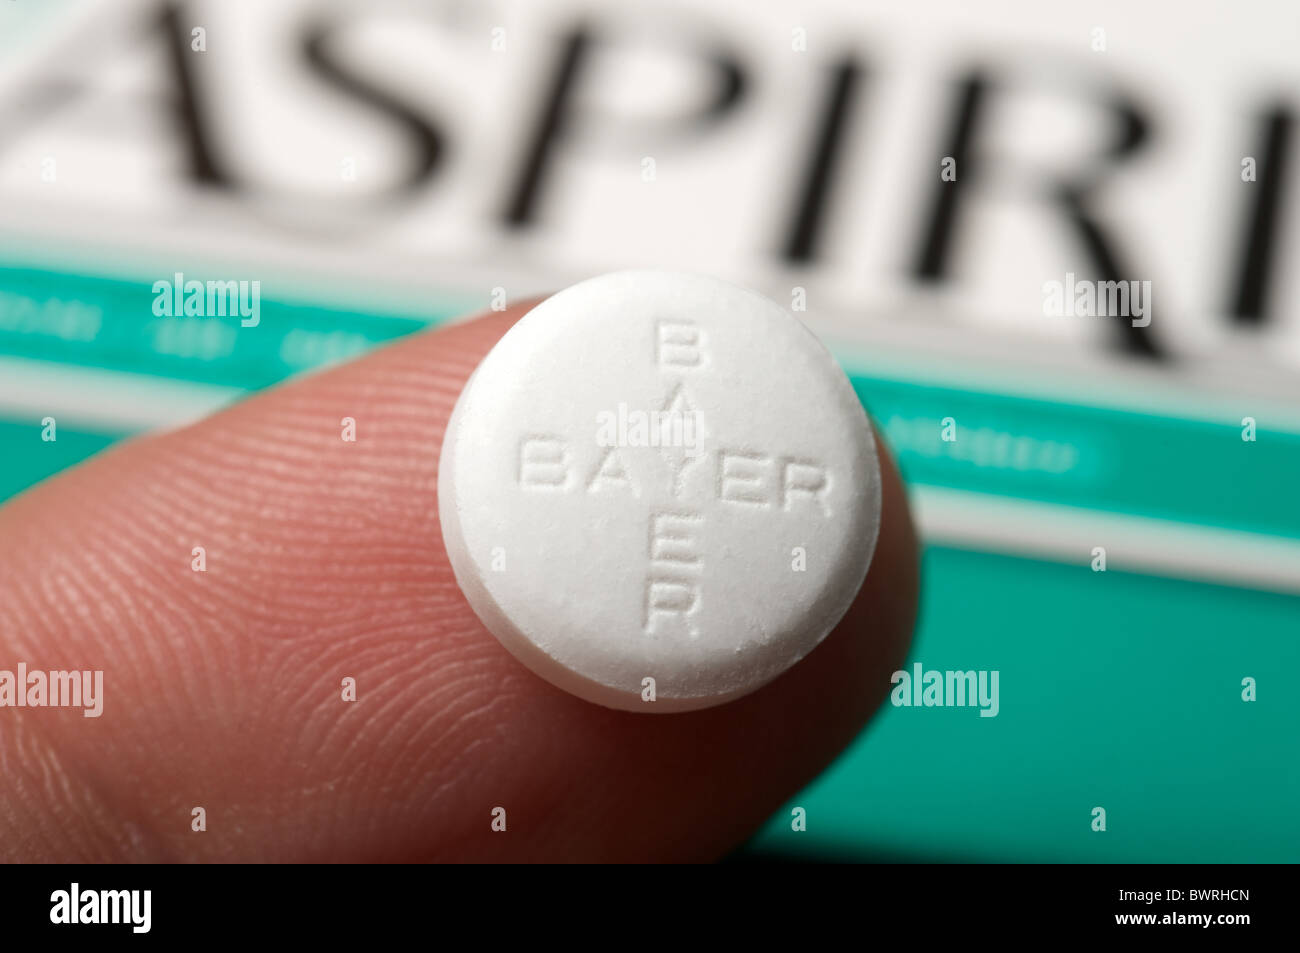 Bayer aspirin Stockfoto